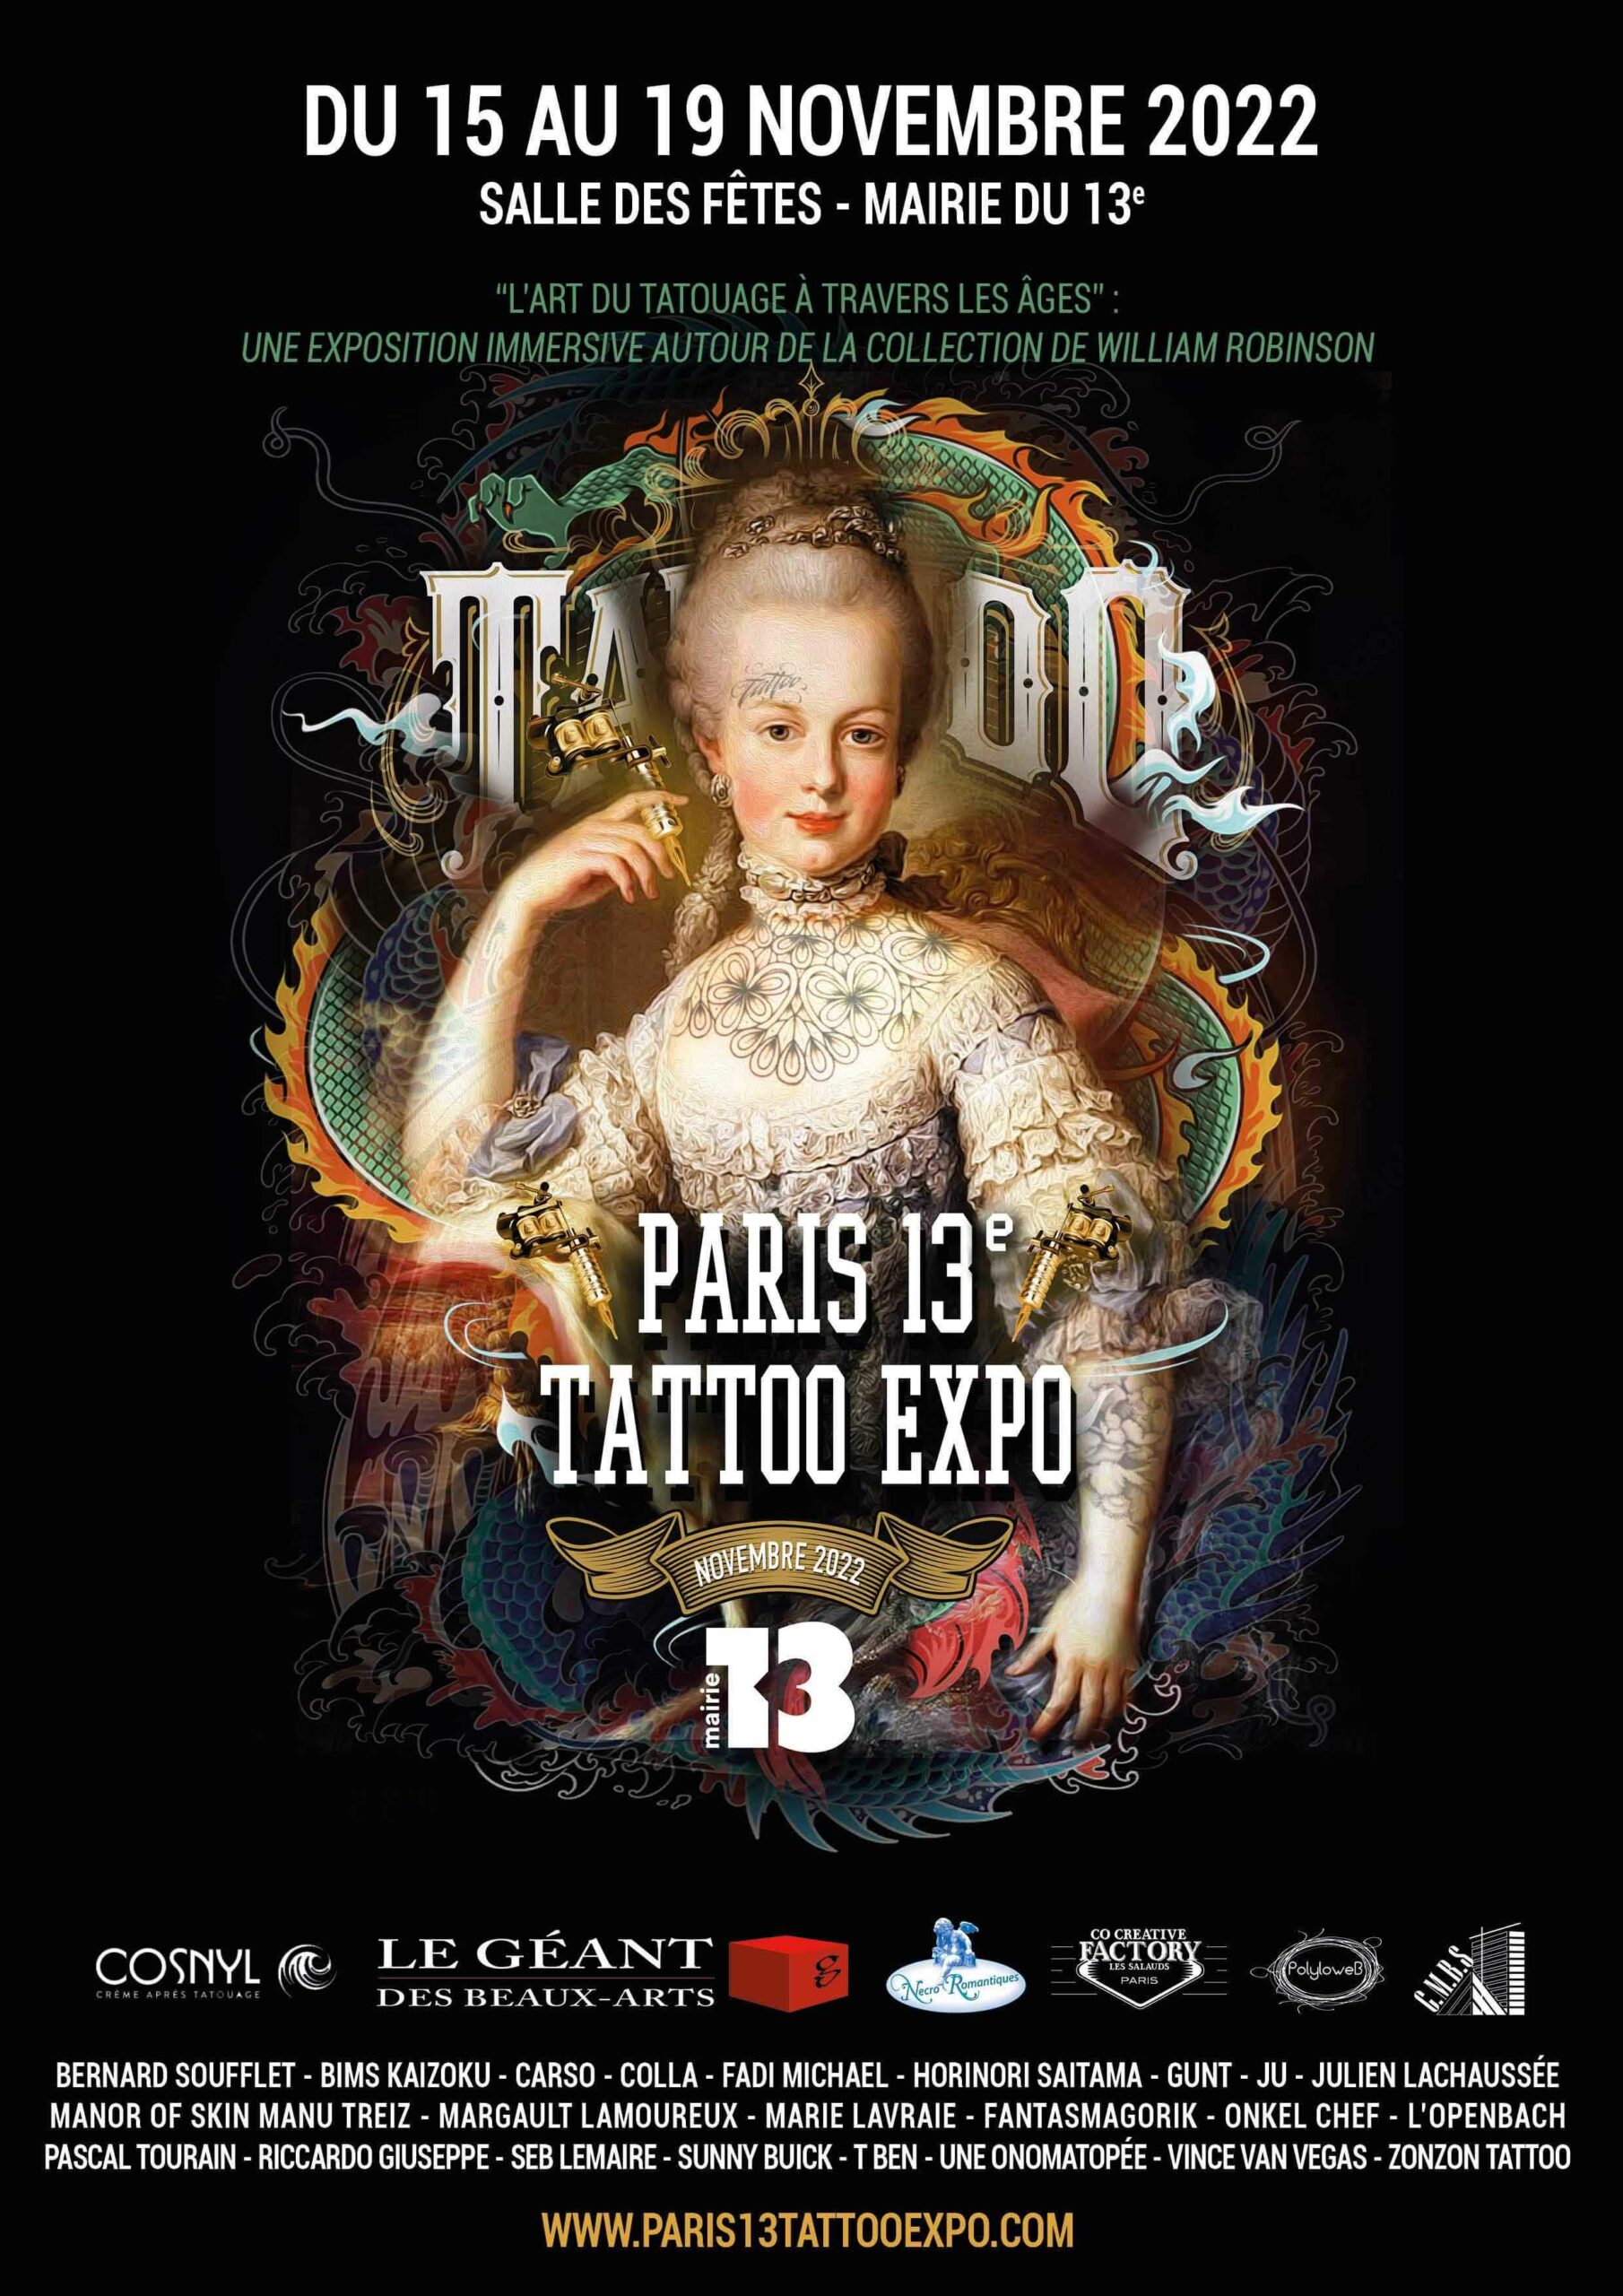 Accueil - Paris 13 Tattoo Expo